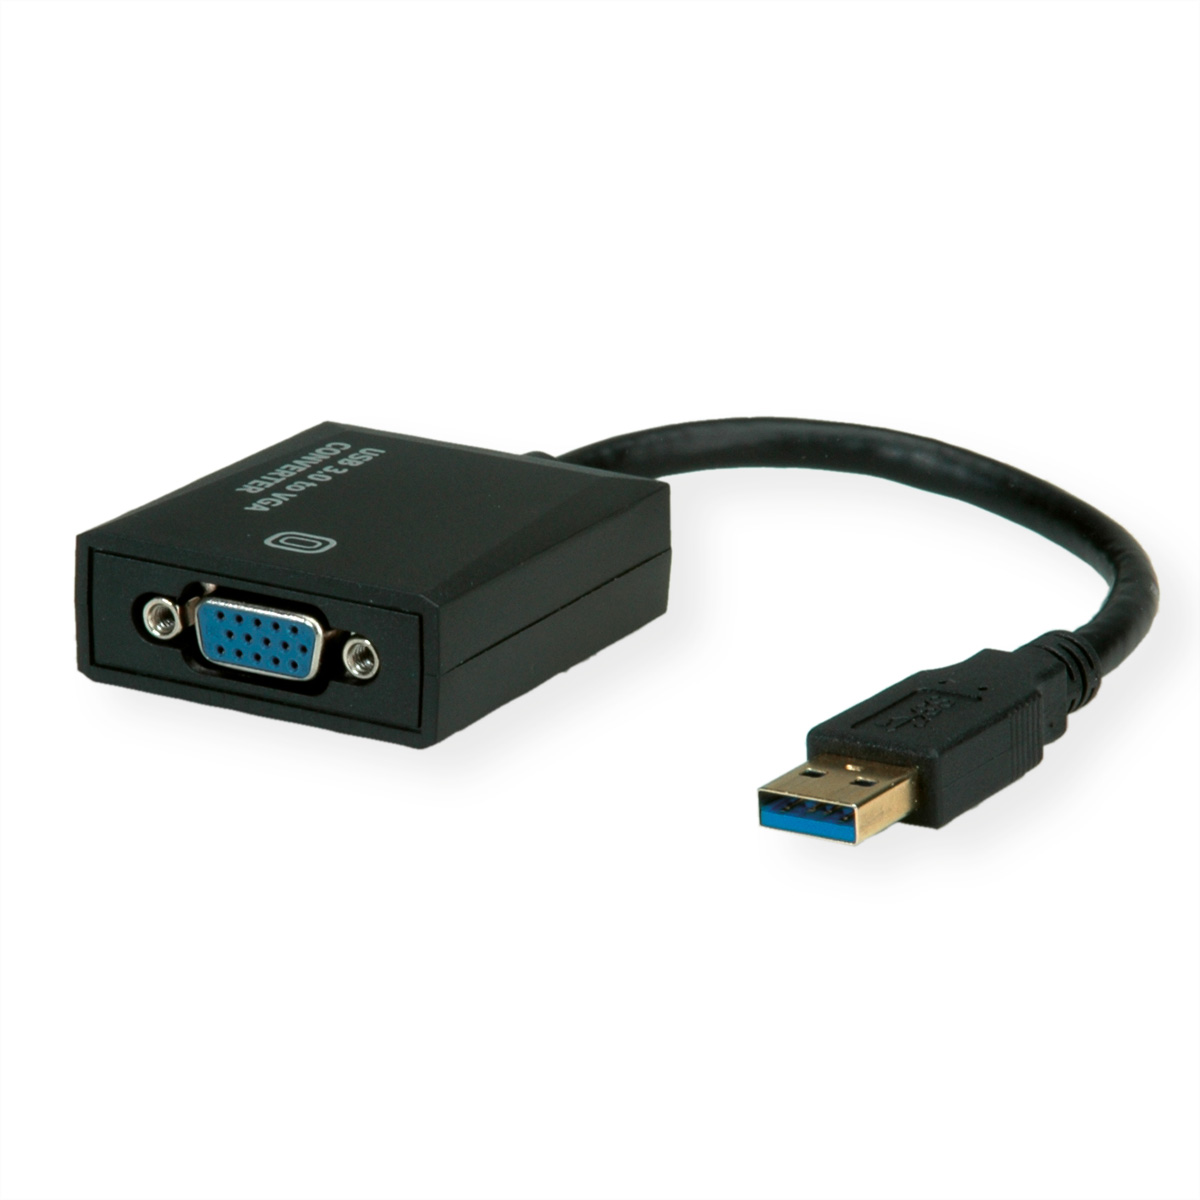 Gen Adapter nach VGA USB Display USB VALUE 3.2 USB-VGA 1 Adapter,